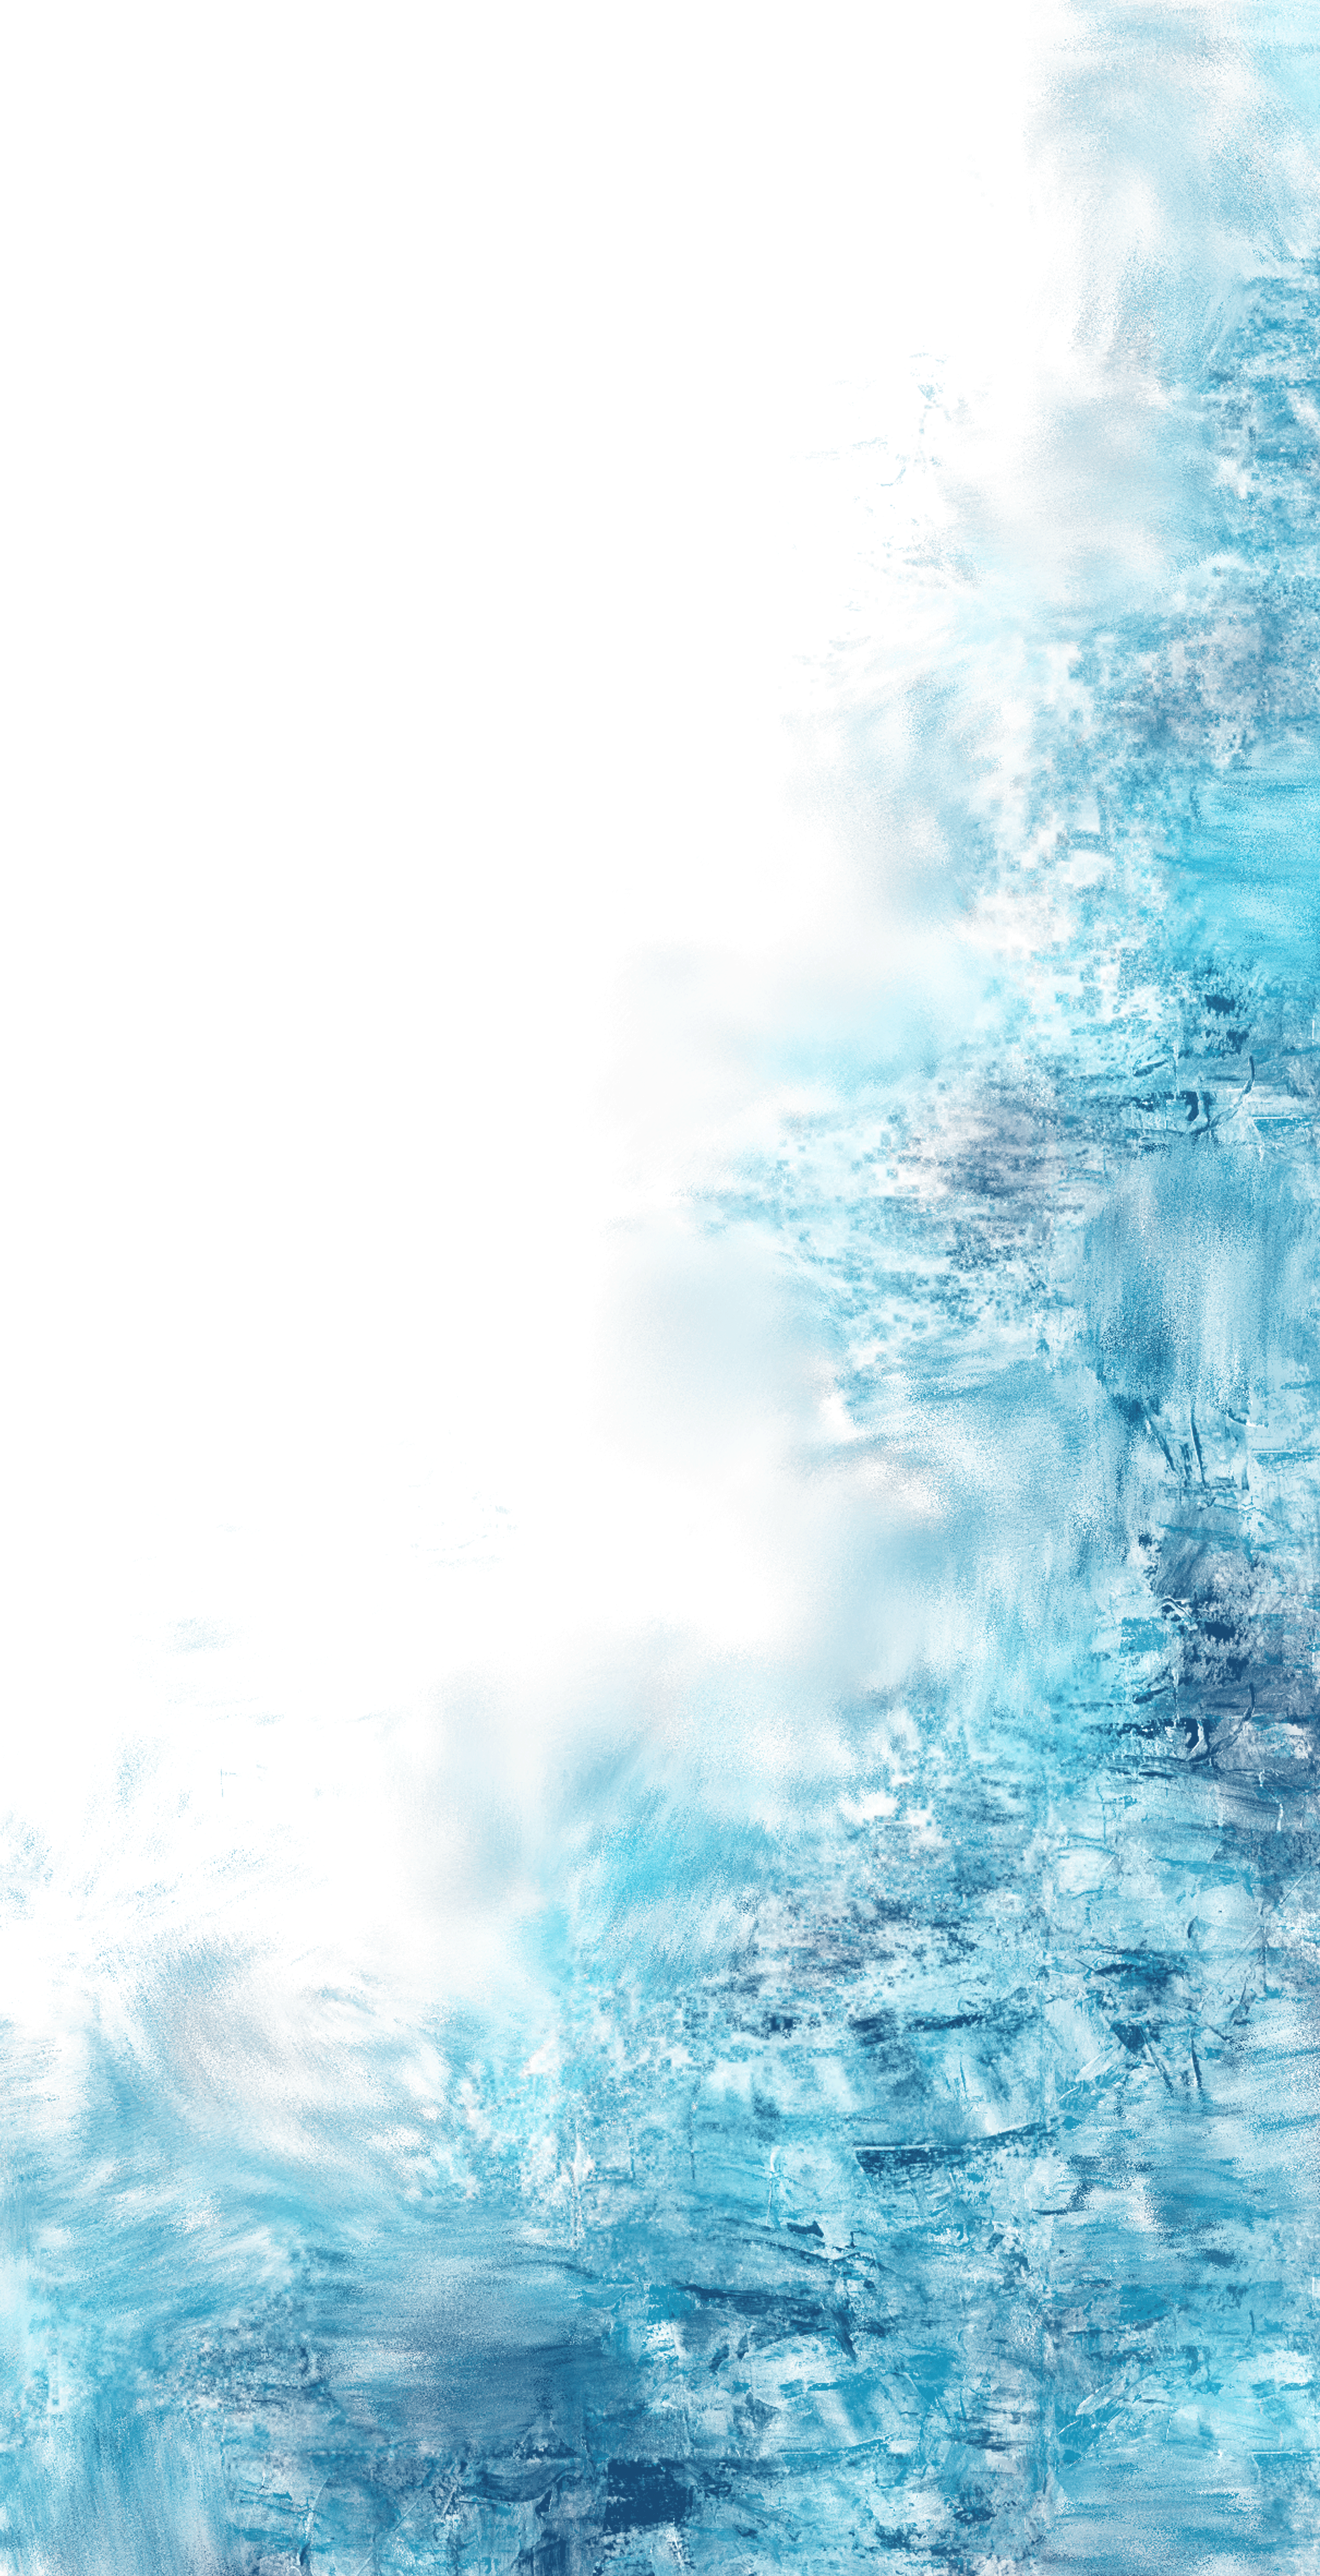 Blue Water Splash Wallpaper Free Hd Image Clipart - Png Water Flow In Sea - HD Wallpaper 